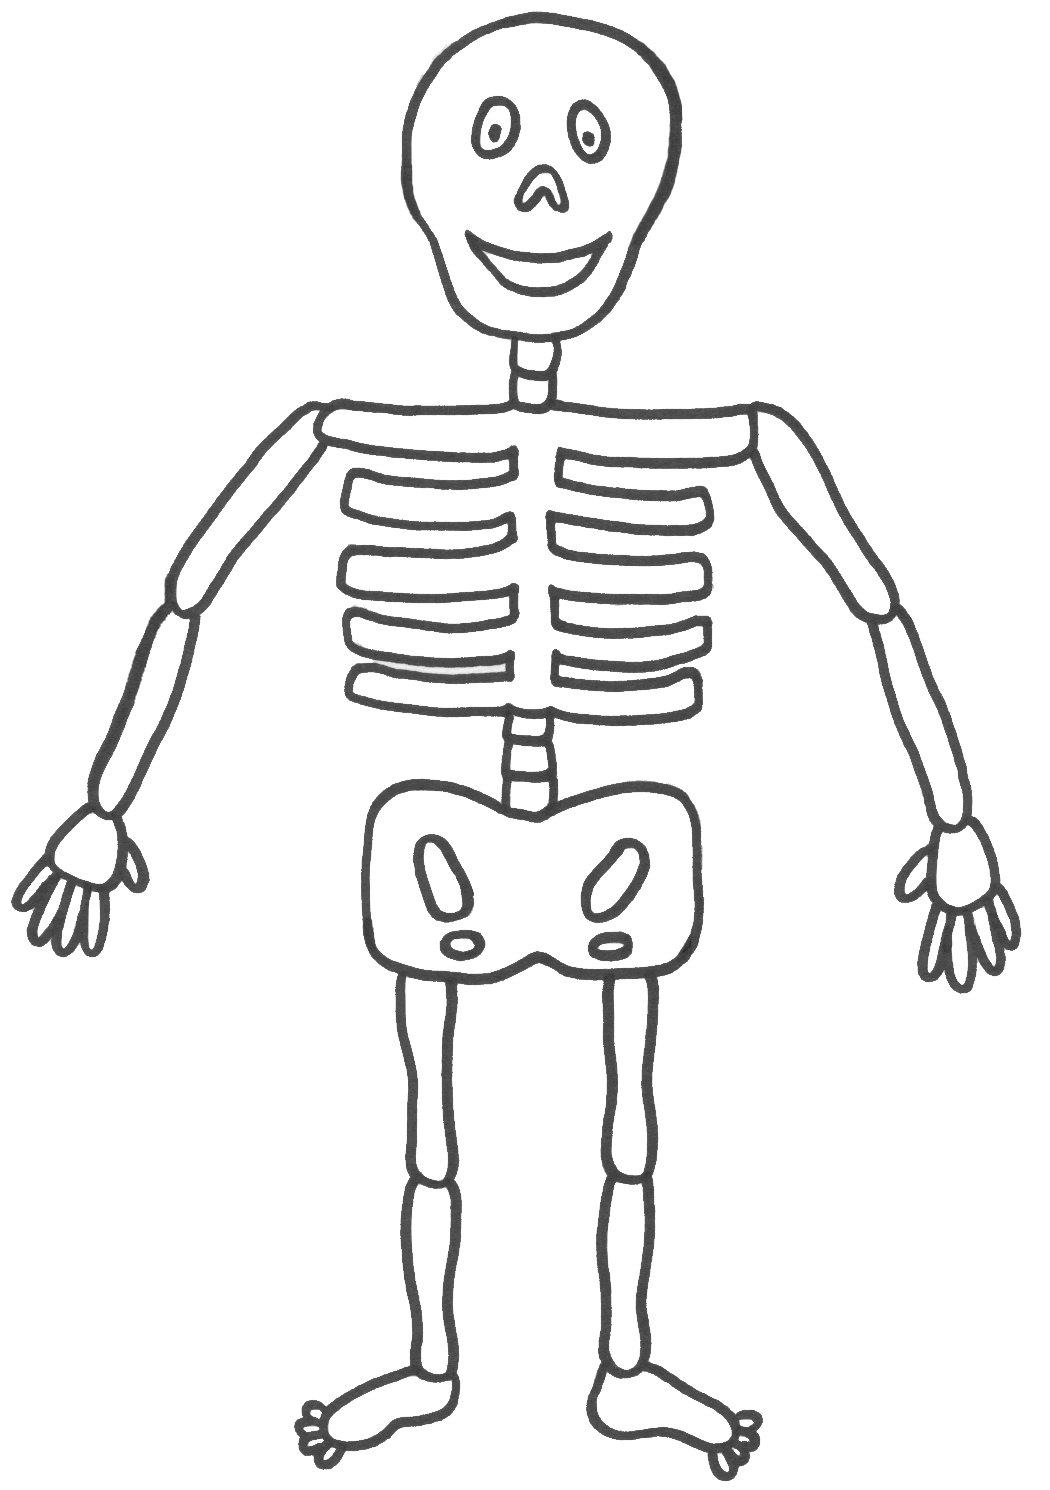 Skeleton Template Easy - ClipArt Best